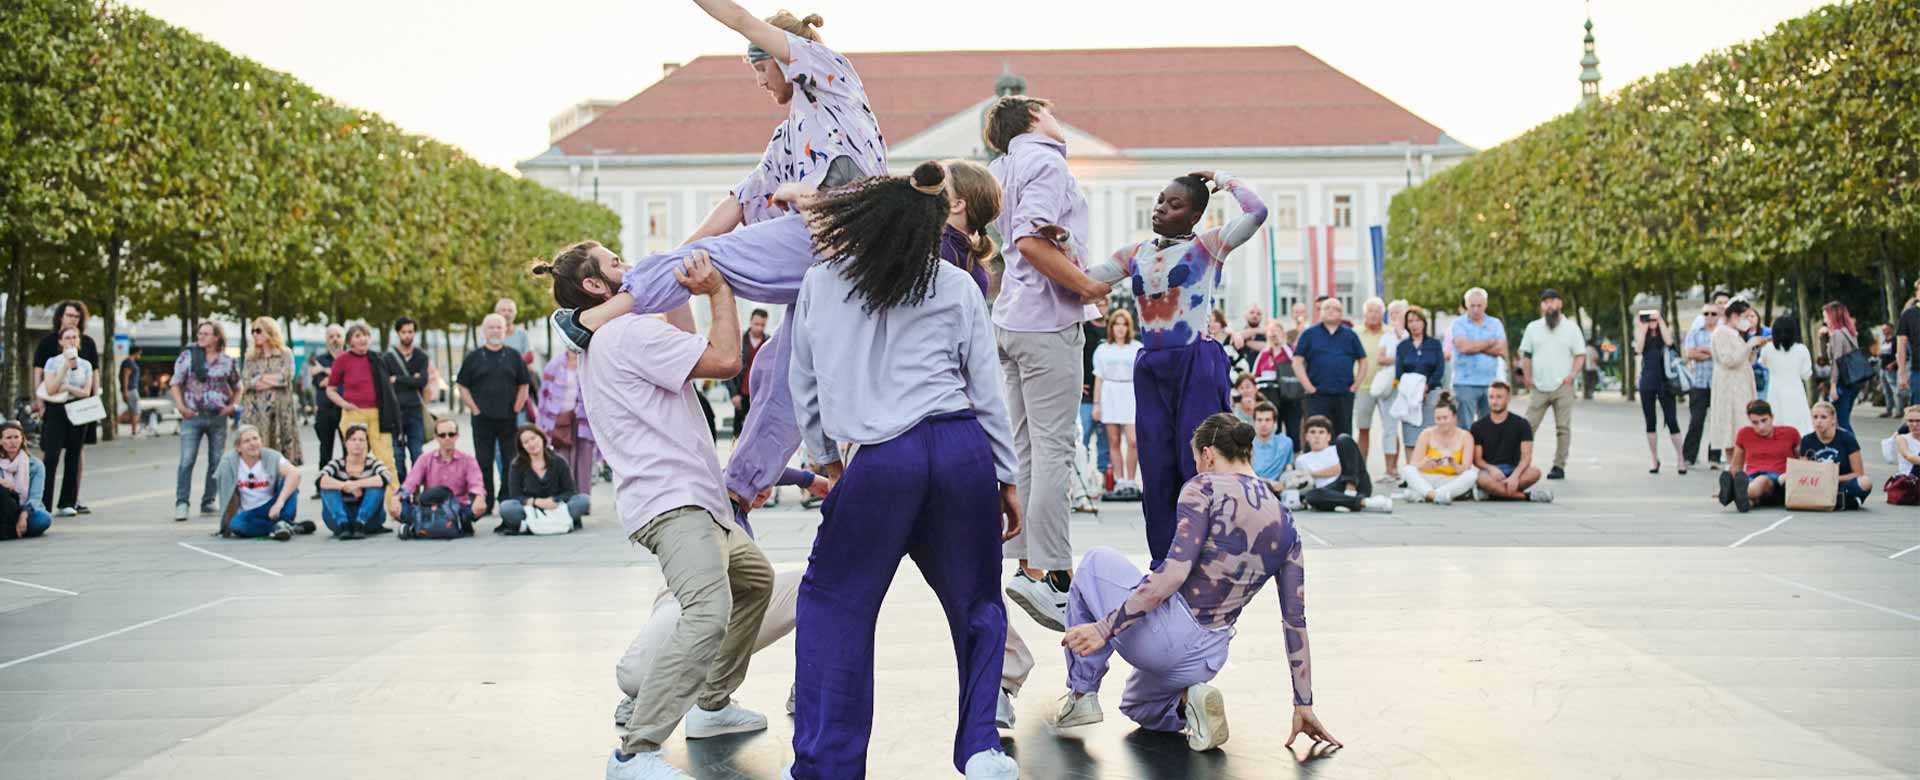 La compagnia di danza austriaca Hungry Sharks durante la scorsa edizione